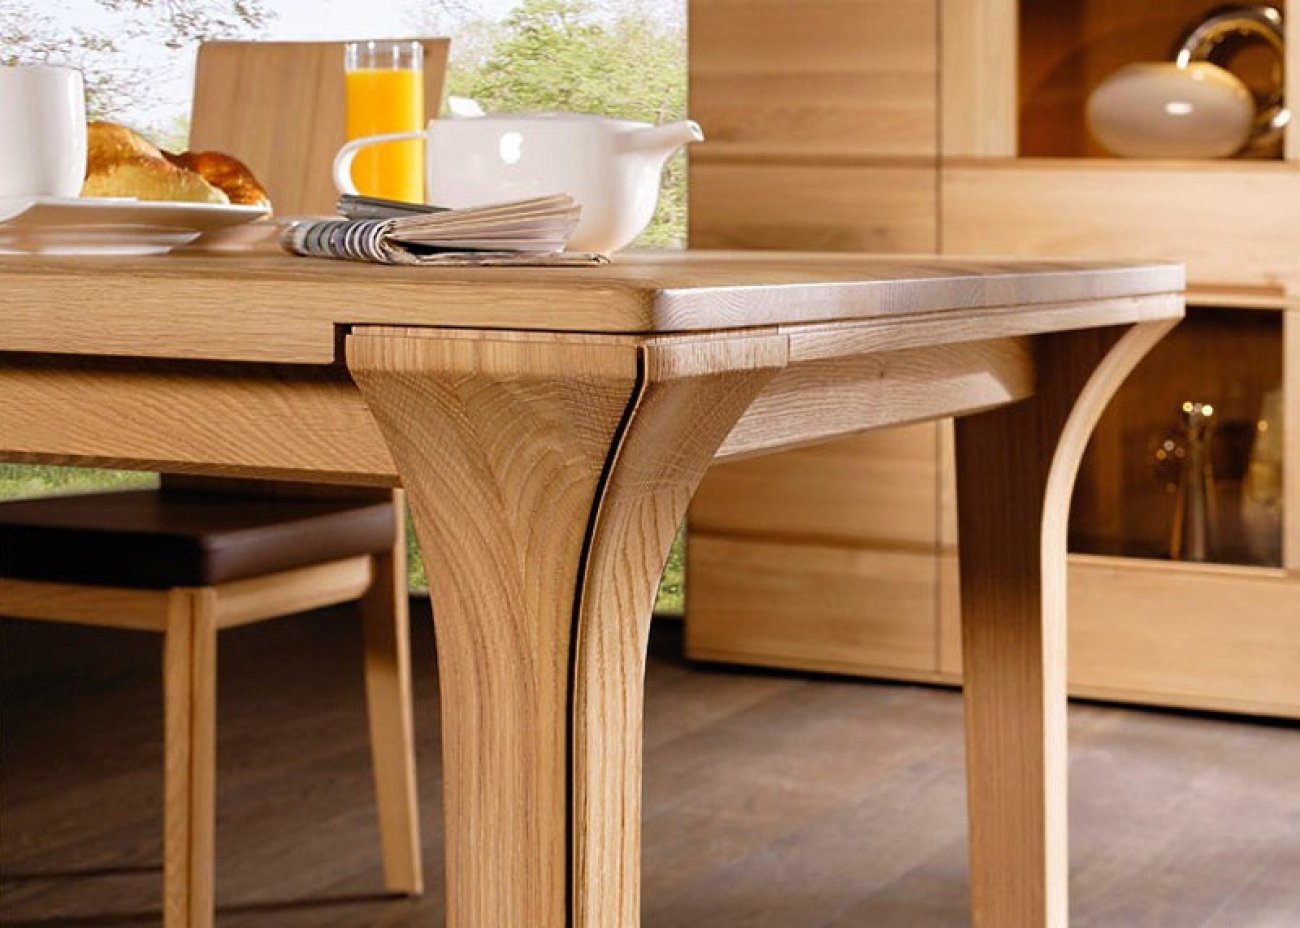 Гладкий край стола. Красивый деревянный стол. Массивный деревянный стол. Столик на кухню. Столик из дерева.